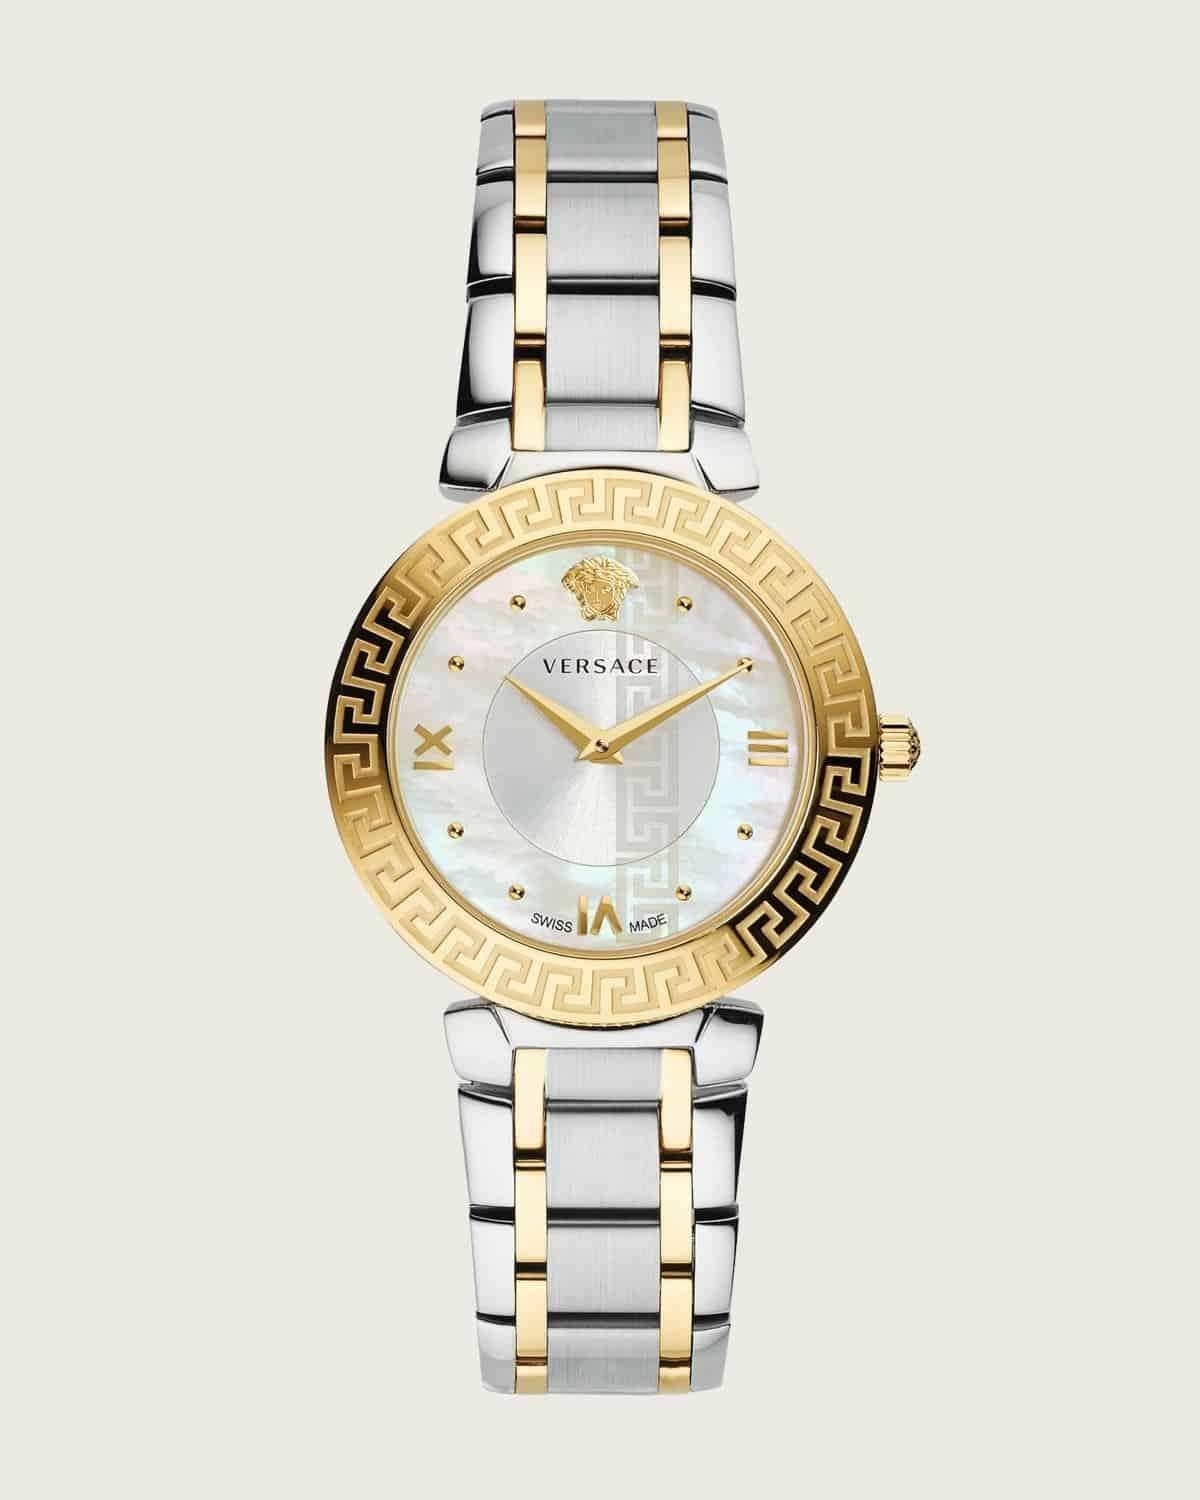 Cách phân biệt đồng hồ Versace thật giả dễ hơn bạn nghĩ